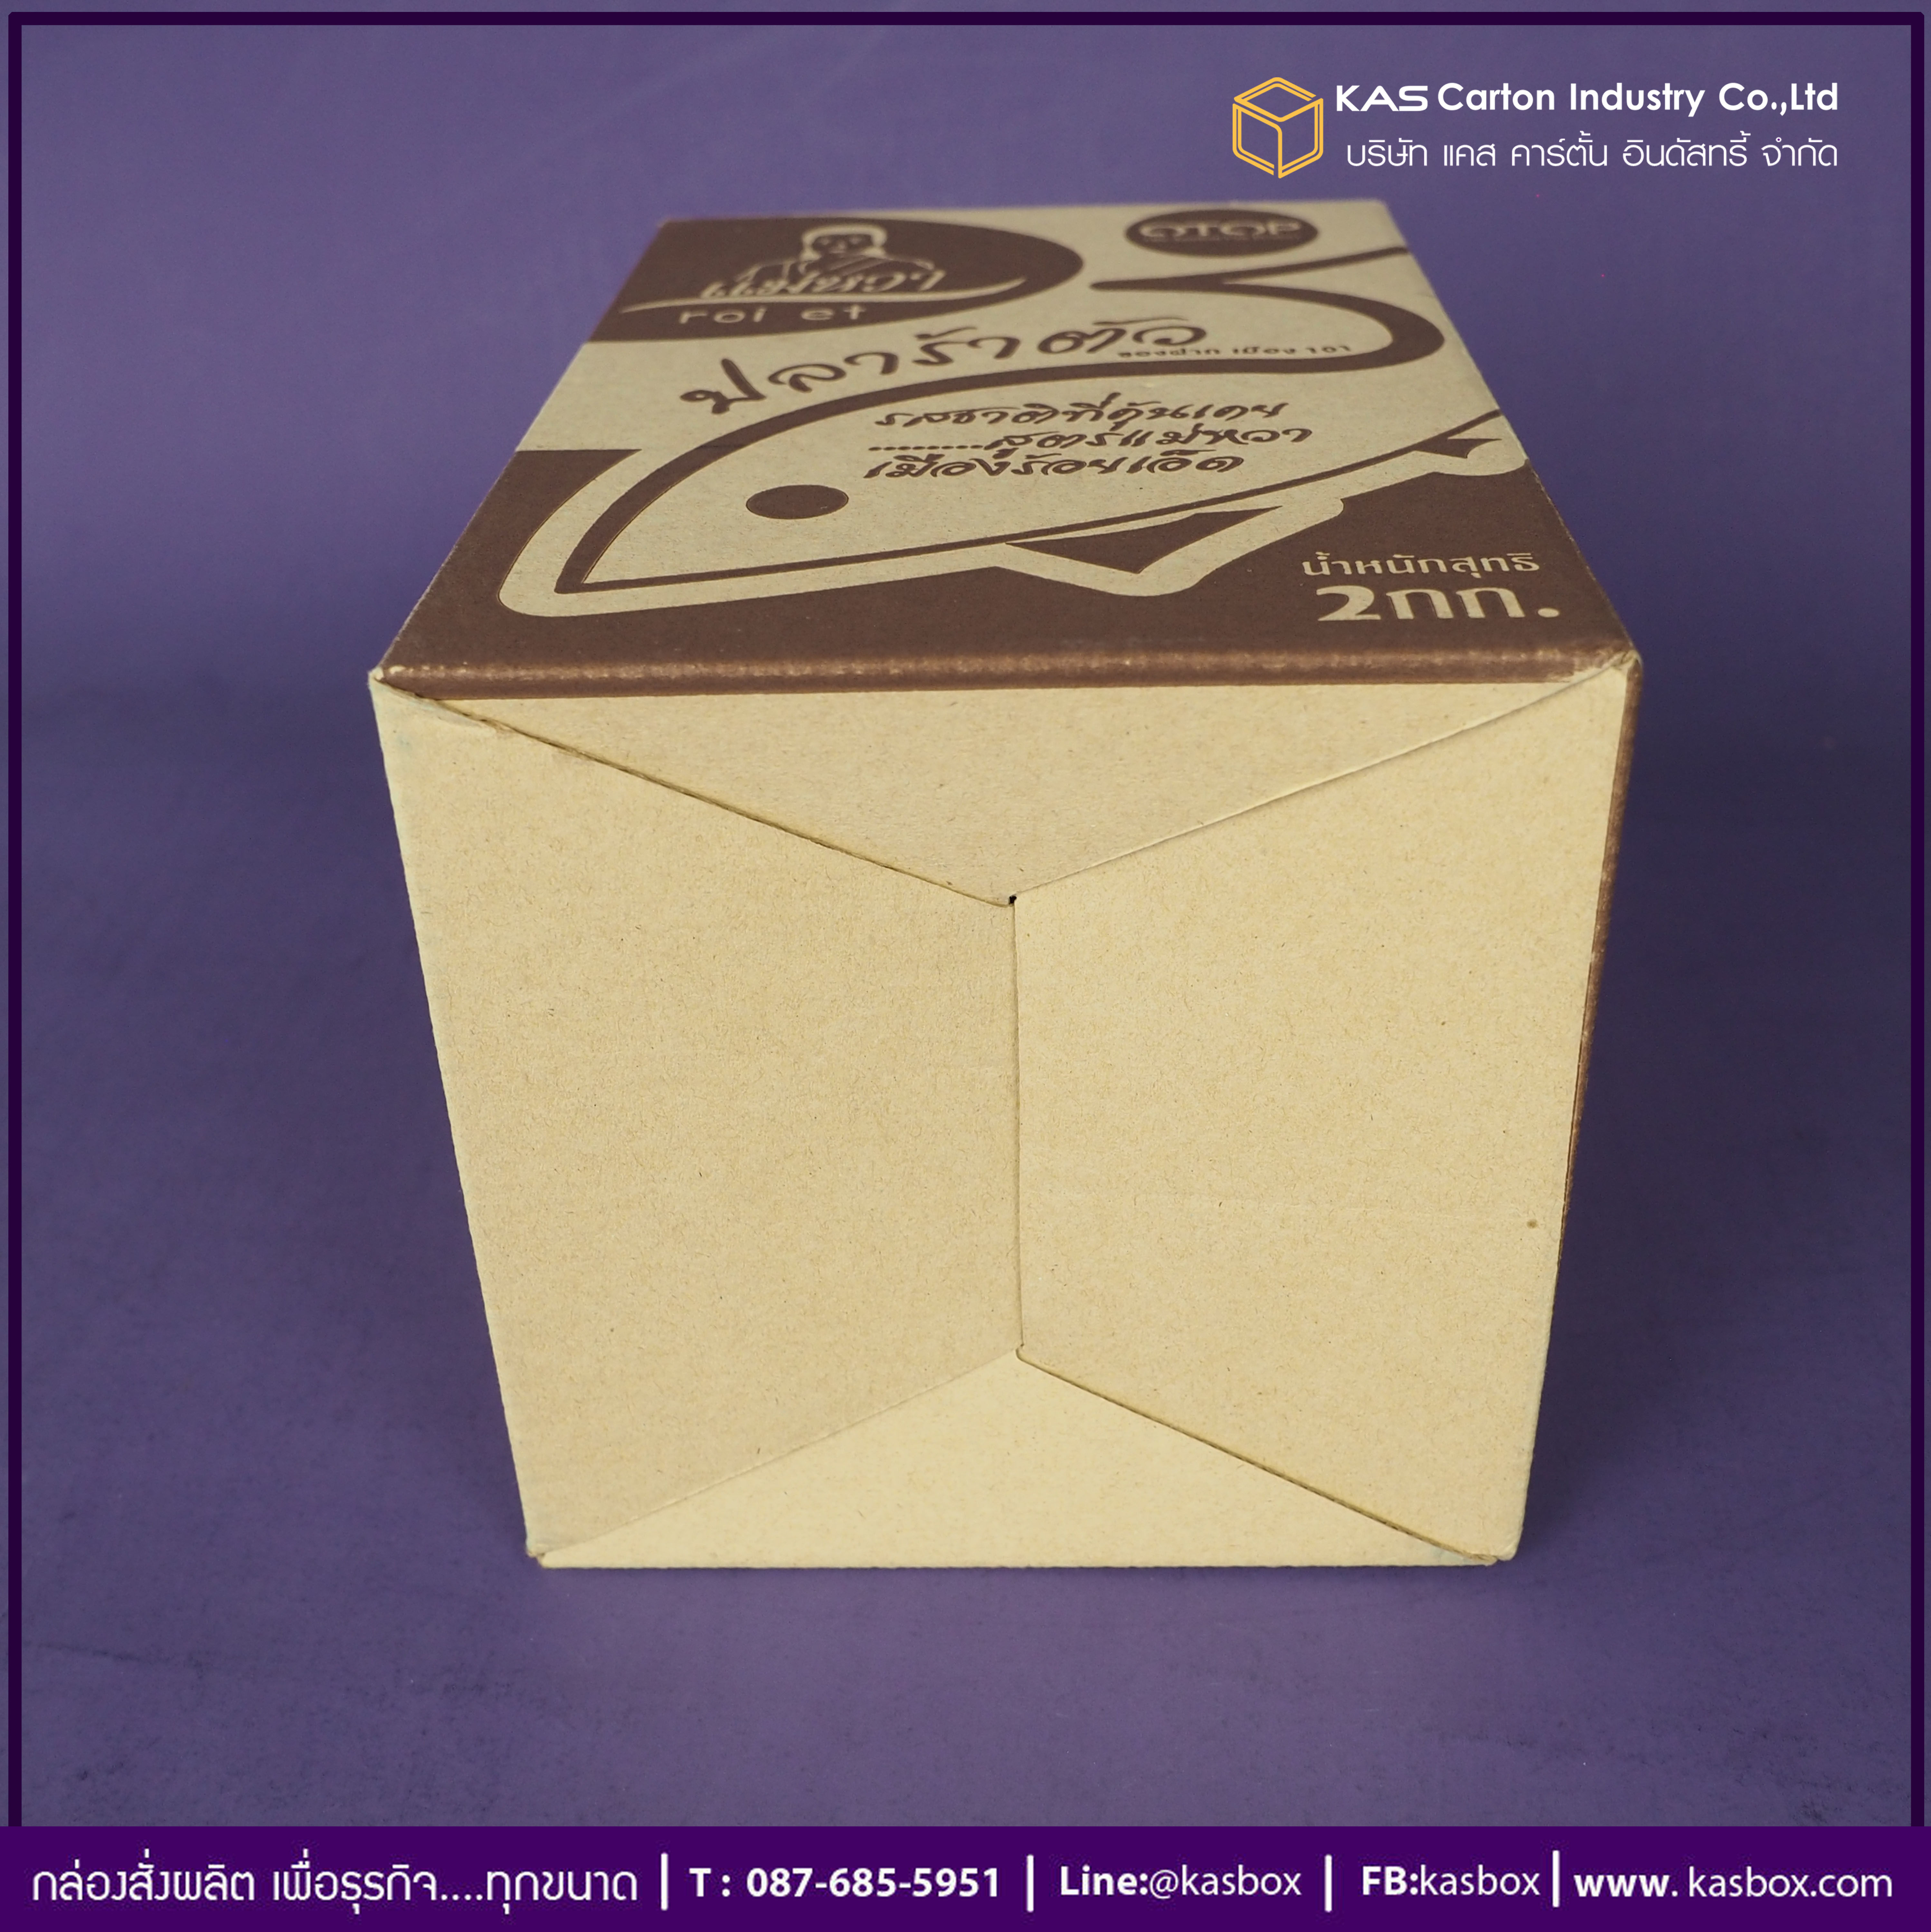 กล่องลูกฟูก สำเร็จรูป และ สั่งผลิต ตามความต้องการลูกค้า กล่องลูกฟูก SME กล่องกระดาษลูกฟูก สินค้าน้ำปลาร้า OTOP แม่หวา